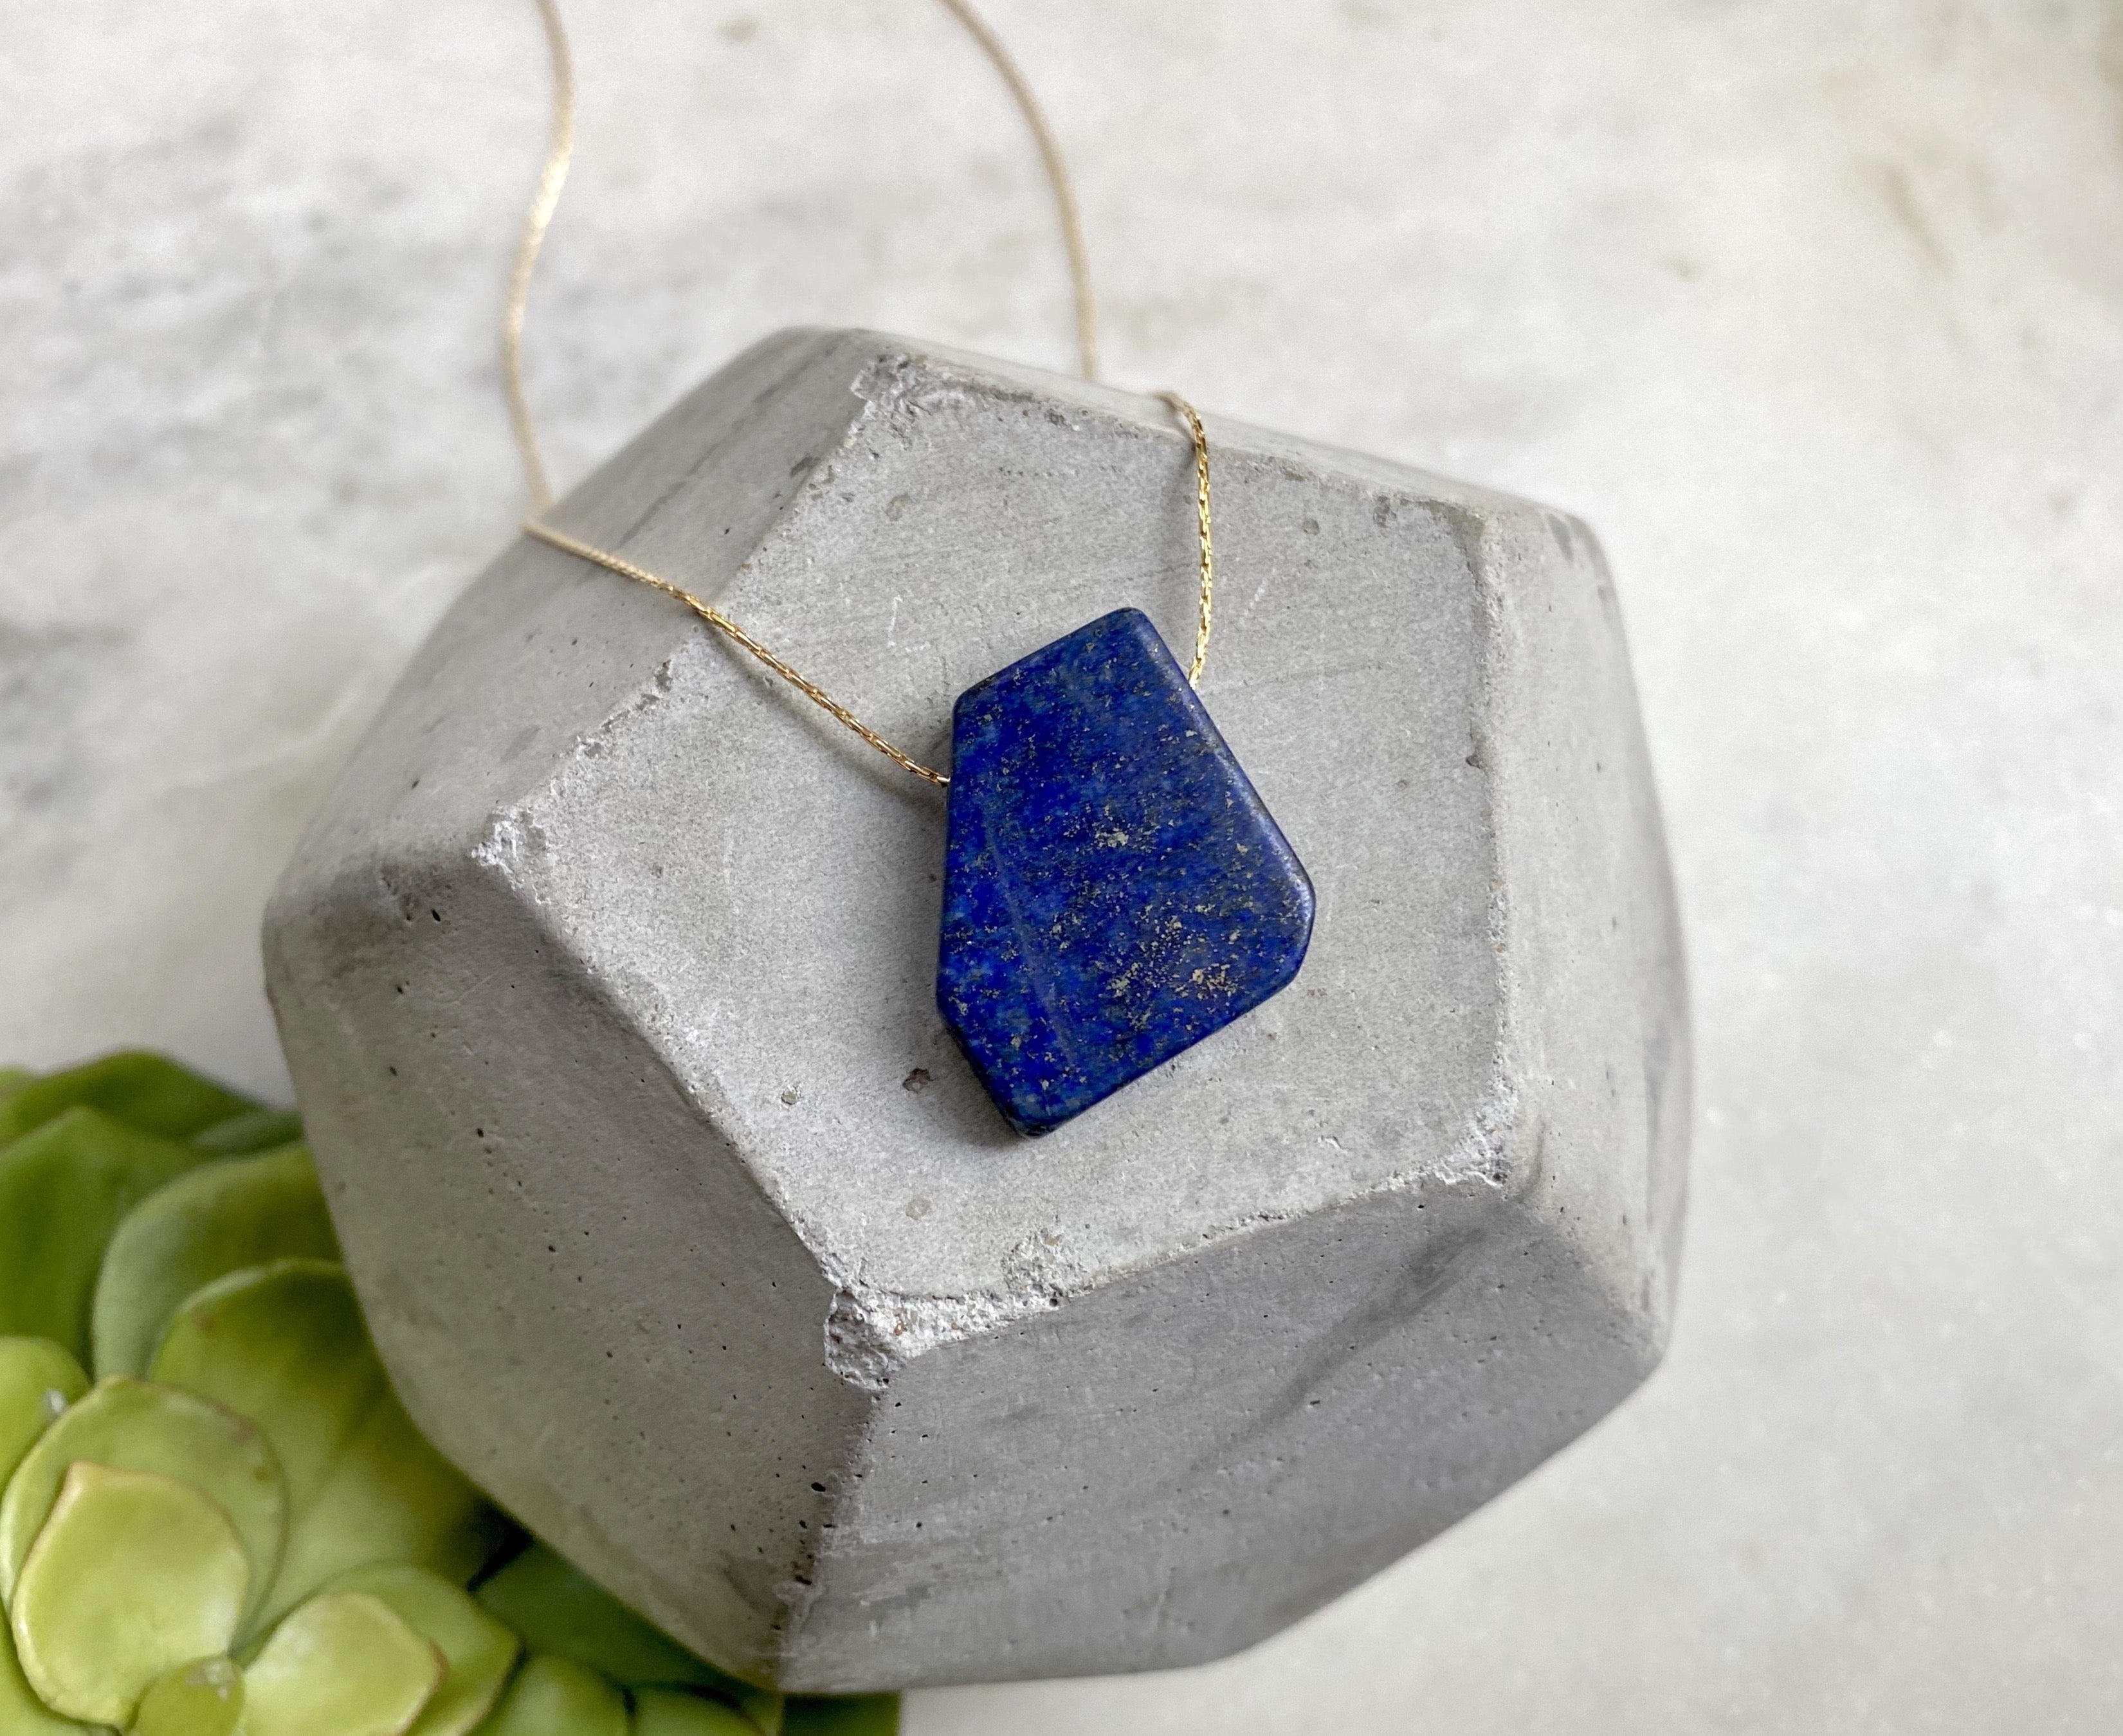 Chunky Lapis Lazuli Floating Pendant Necklace - September Birthstone